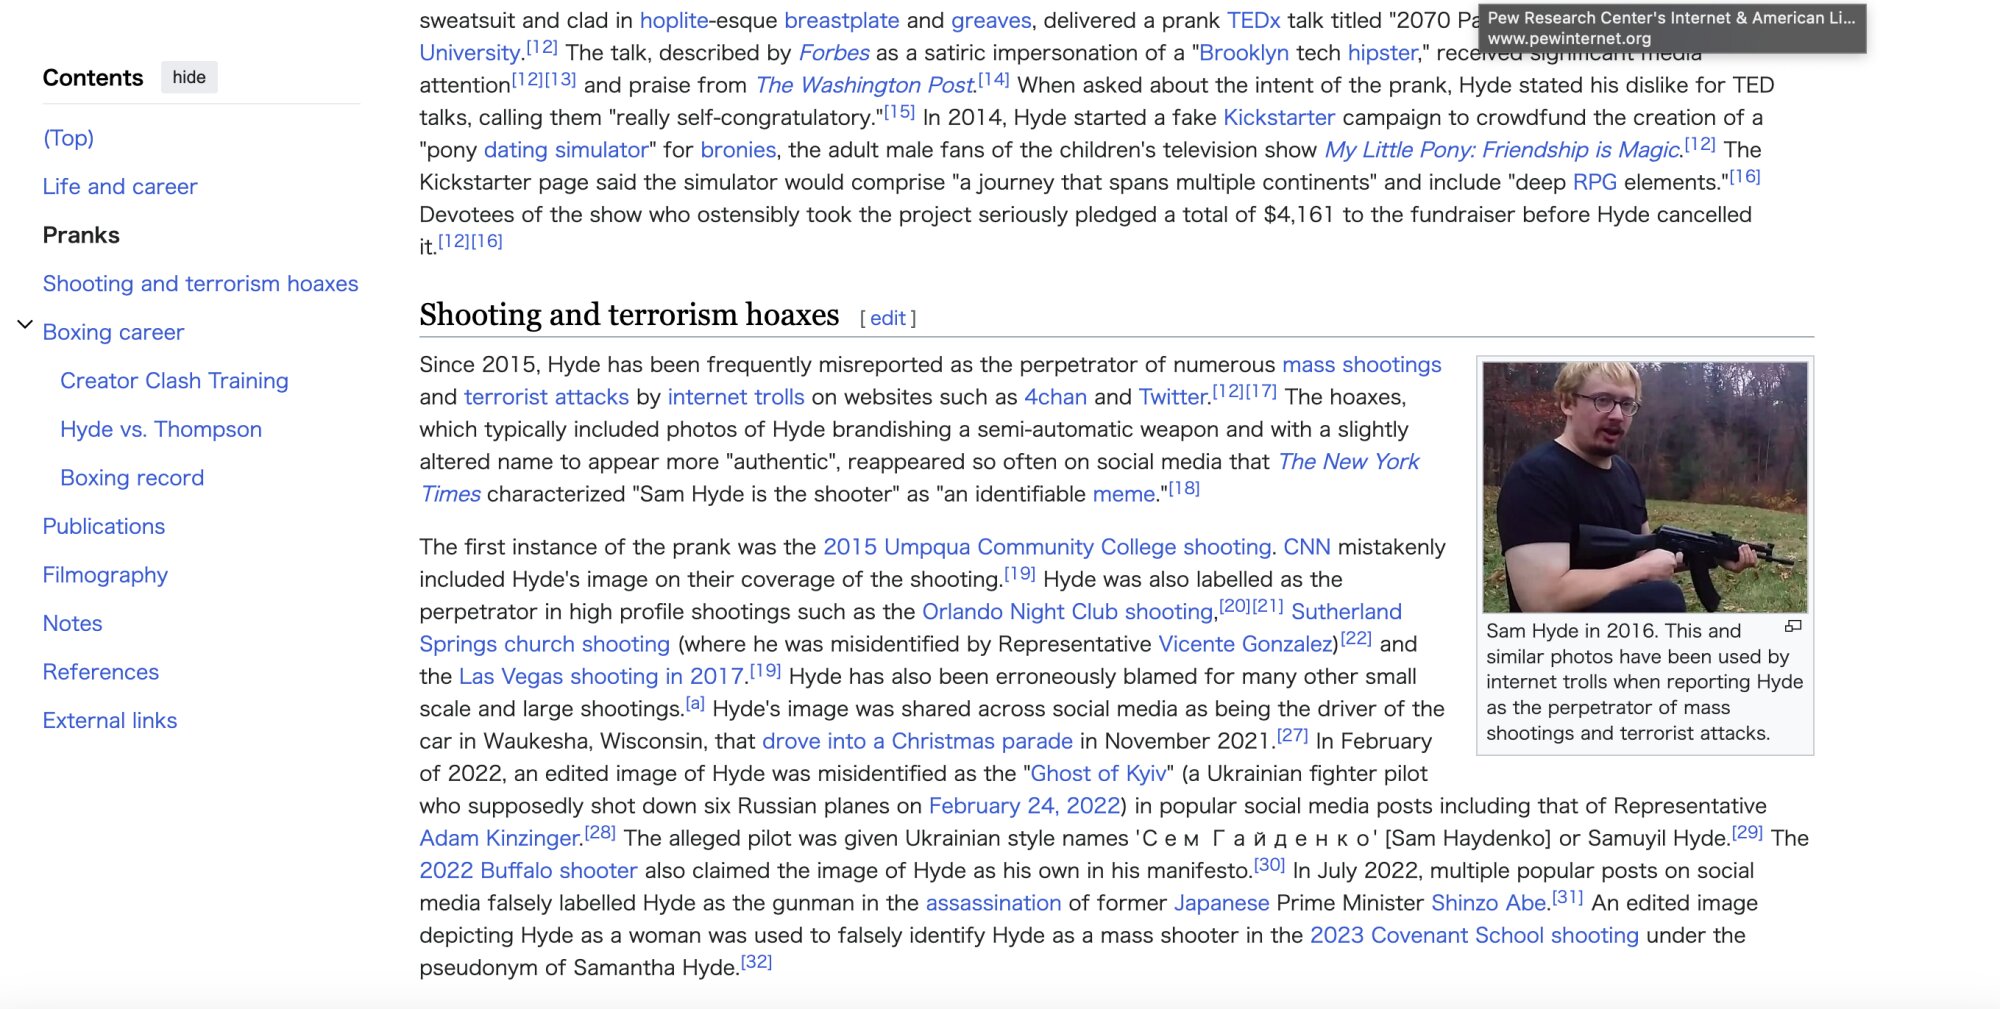 「サム・ハイド」のウィキペディアのページの部分、写っている写真がミーム化してしばしば拡散される。